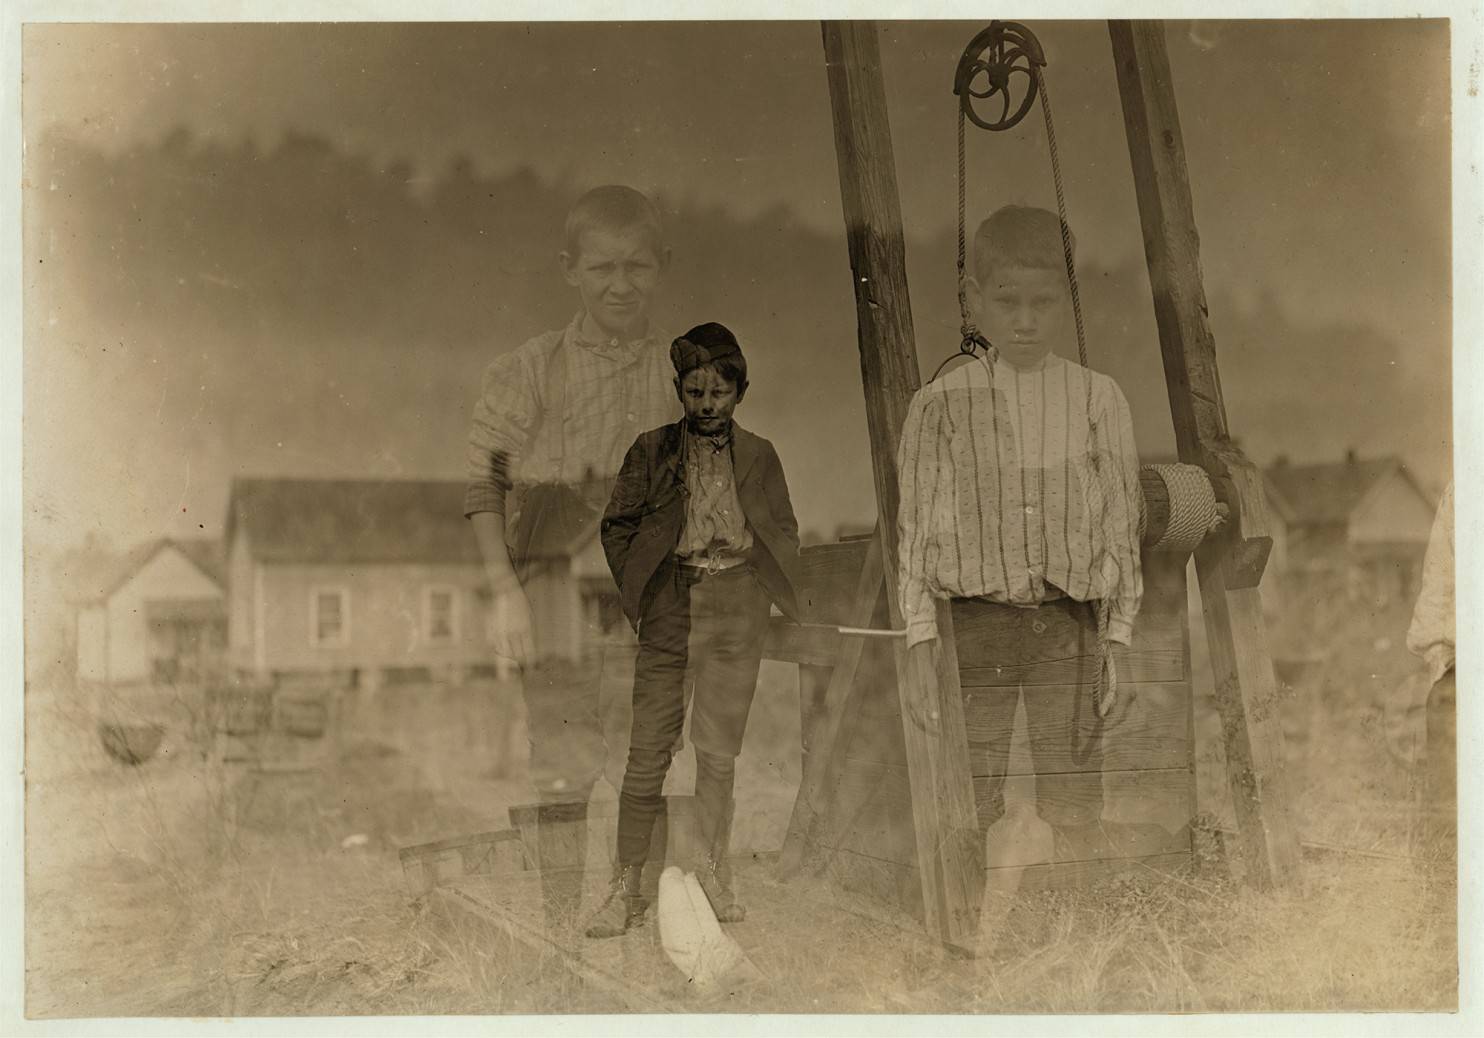 Jezivi portreti djece prisiljene na težak rad s početka 20. st